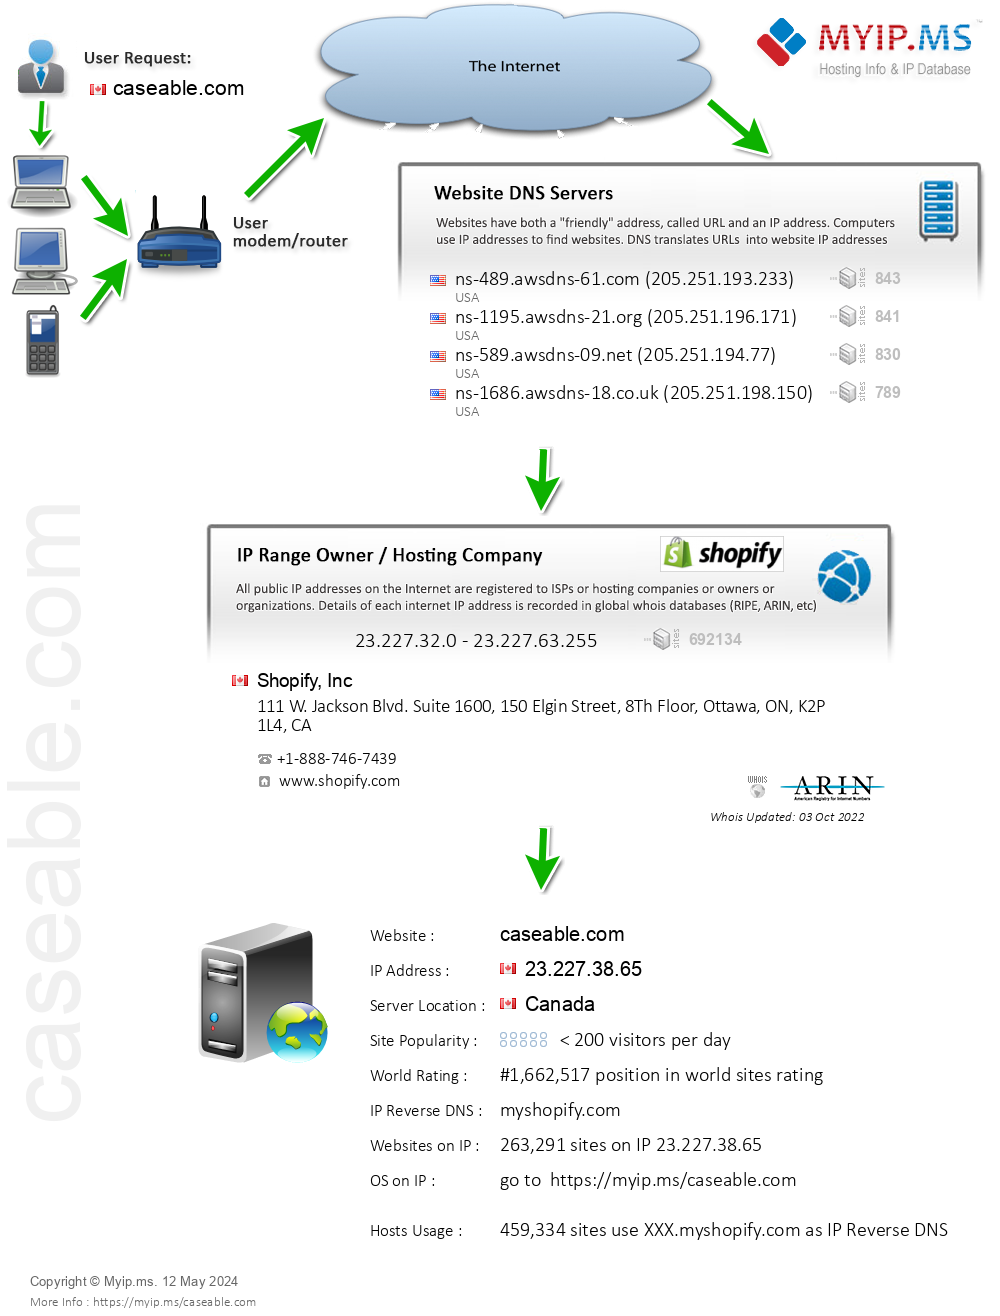 Caseable.com - Website Hosting Visual IP Diagram